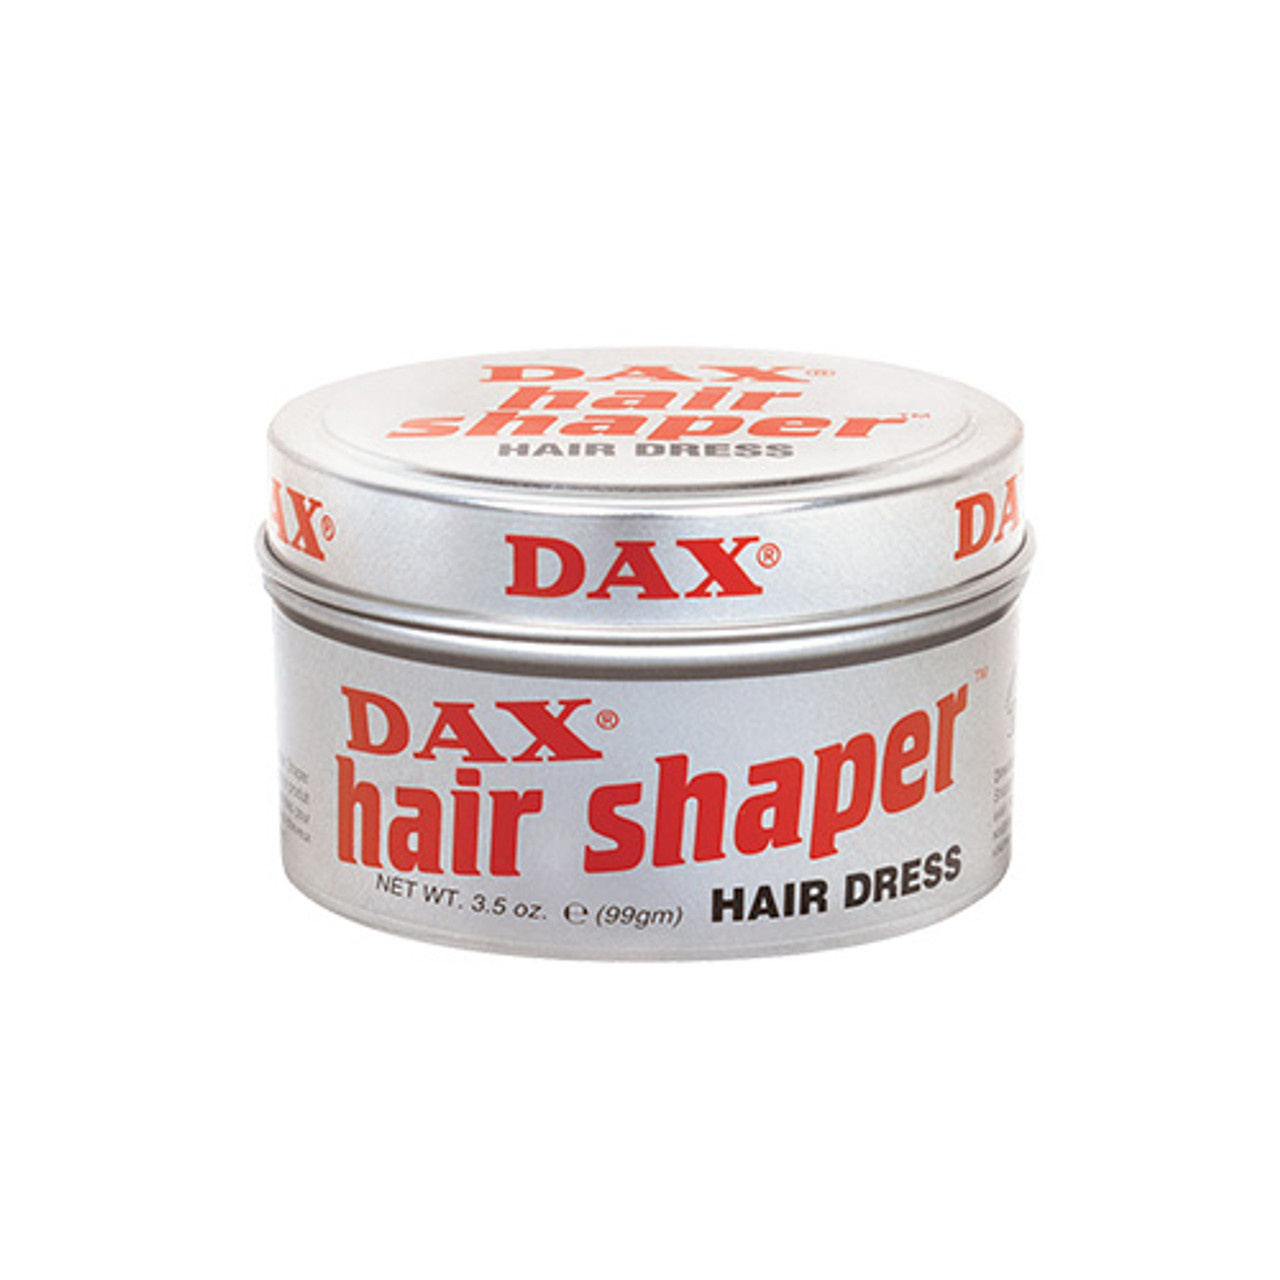 Dax Hair Shaper Hair Dress 3.5 oz